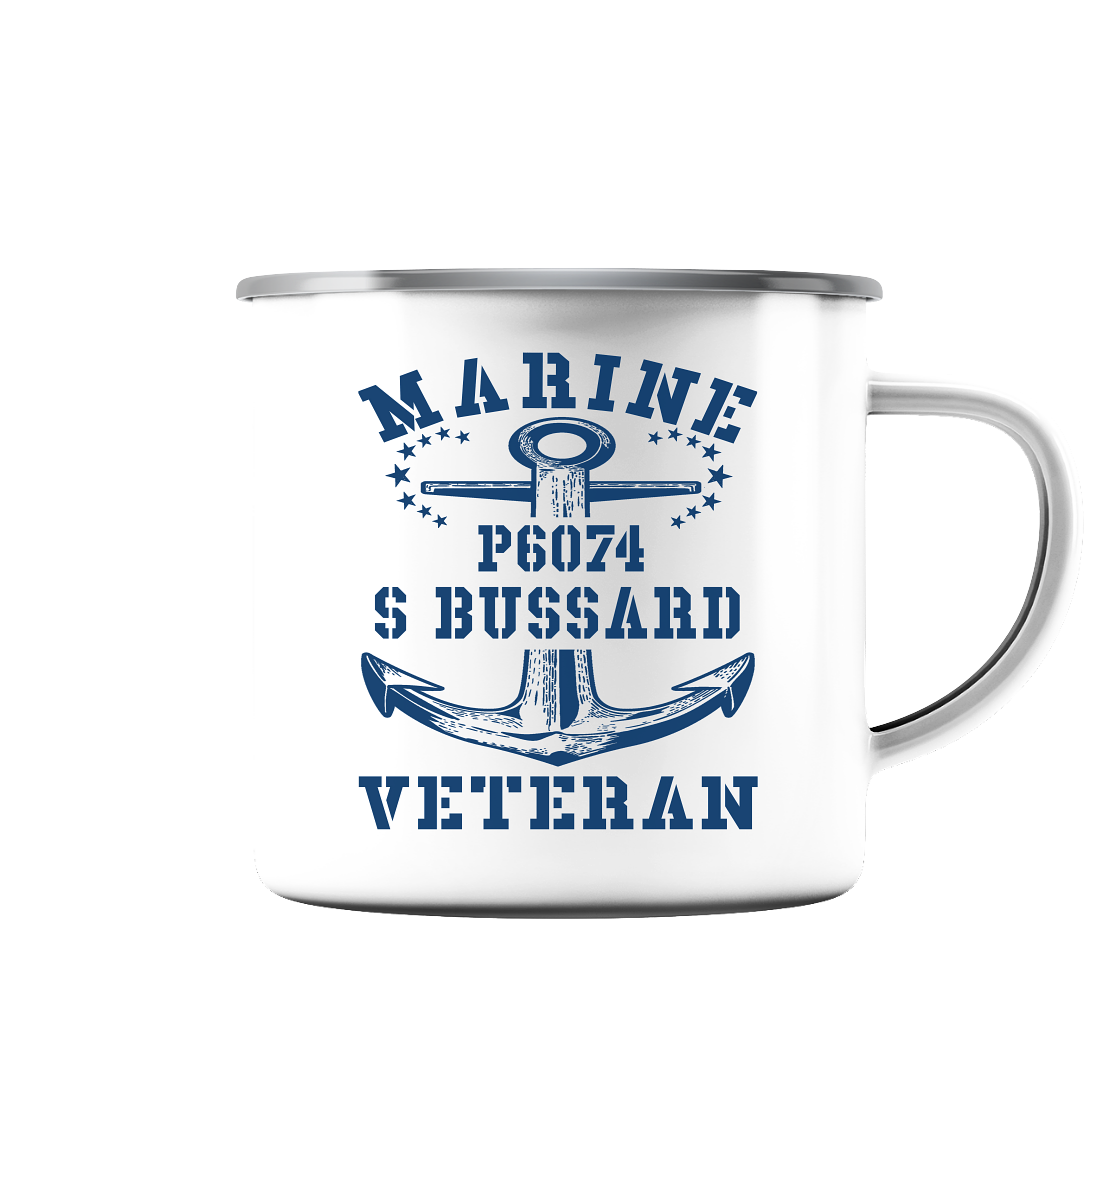 P6074 S BUSSARD Marine Veteran - Emaille Tasse (Silber)